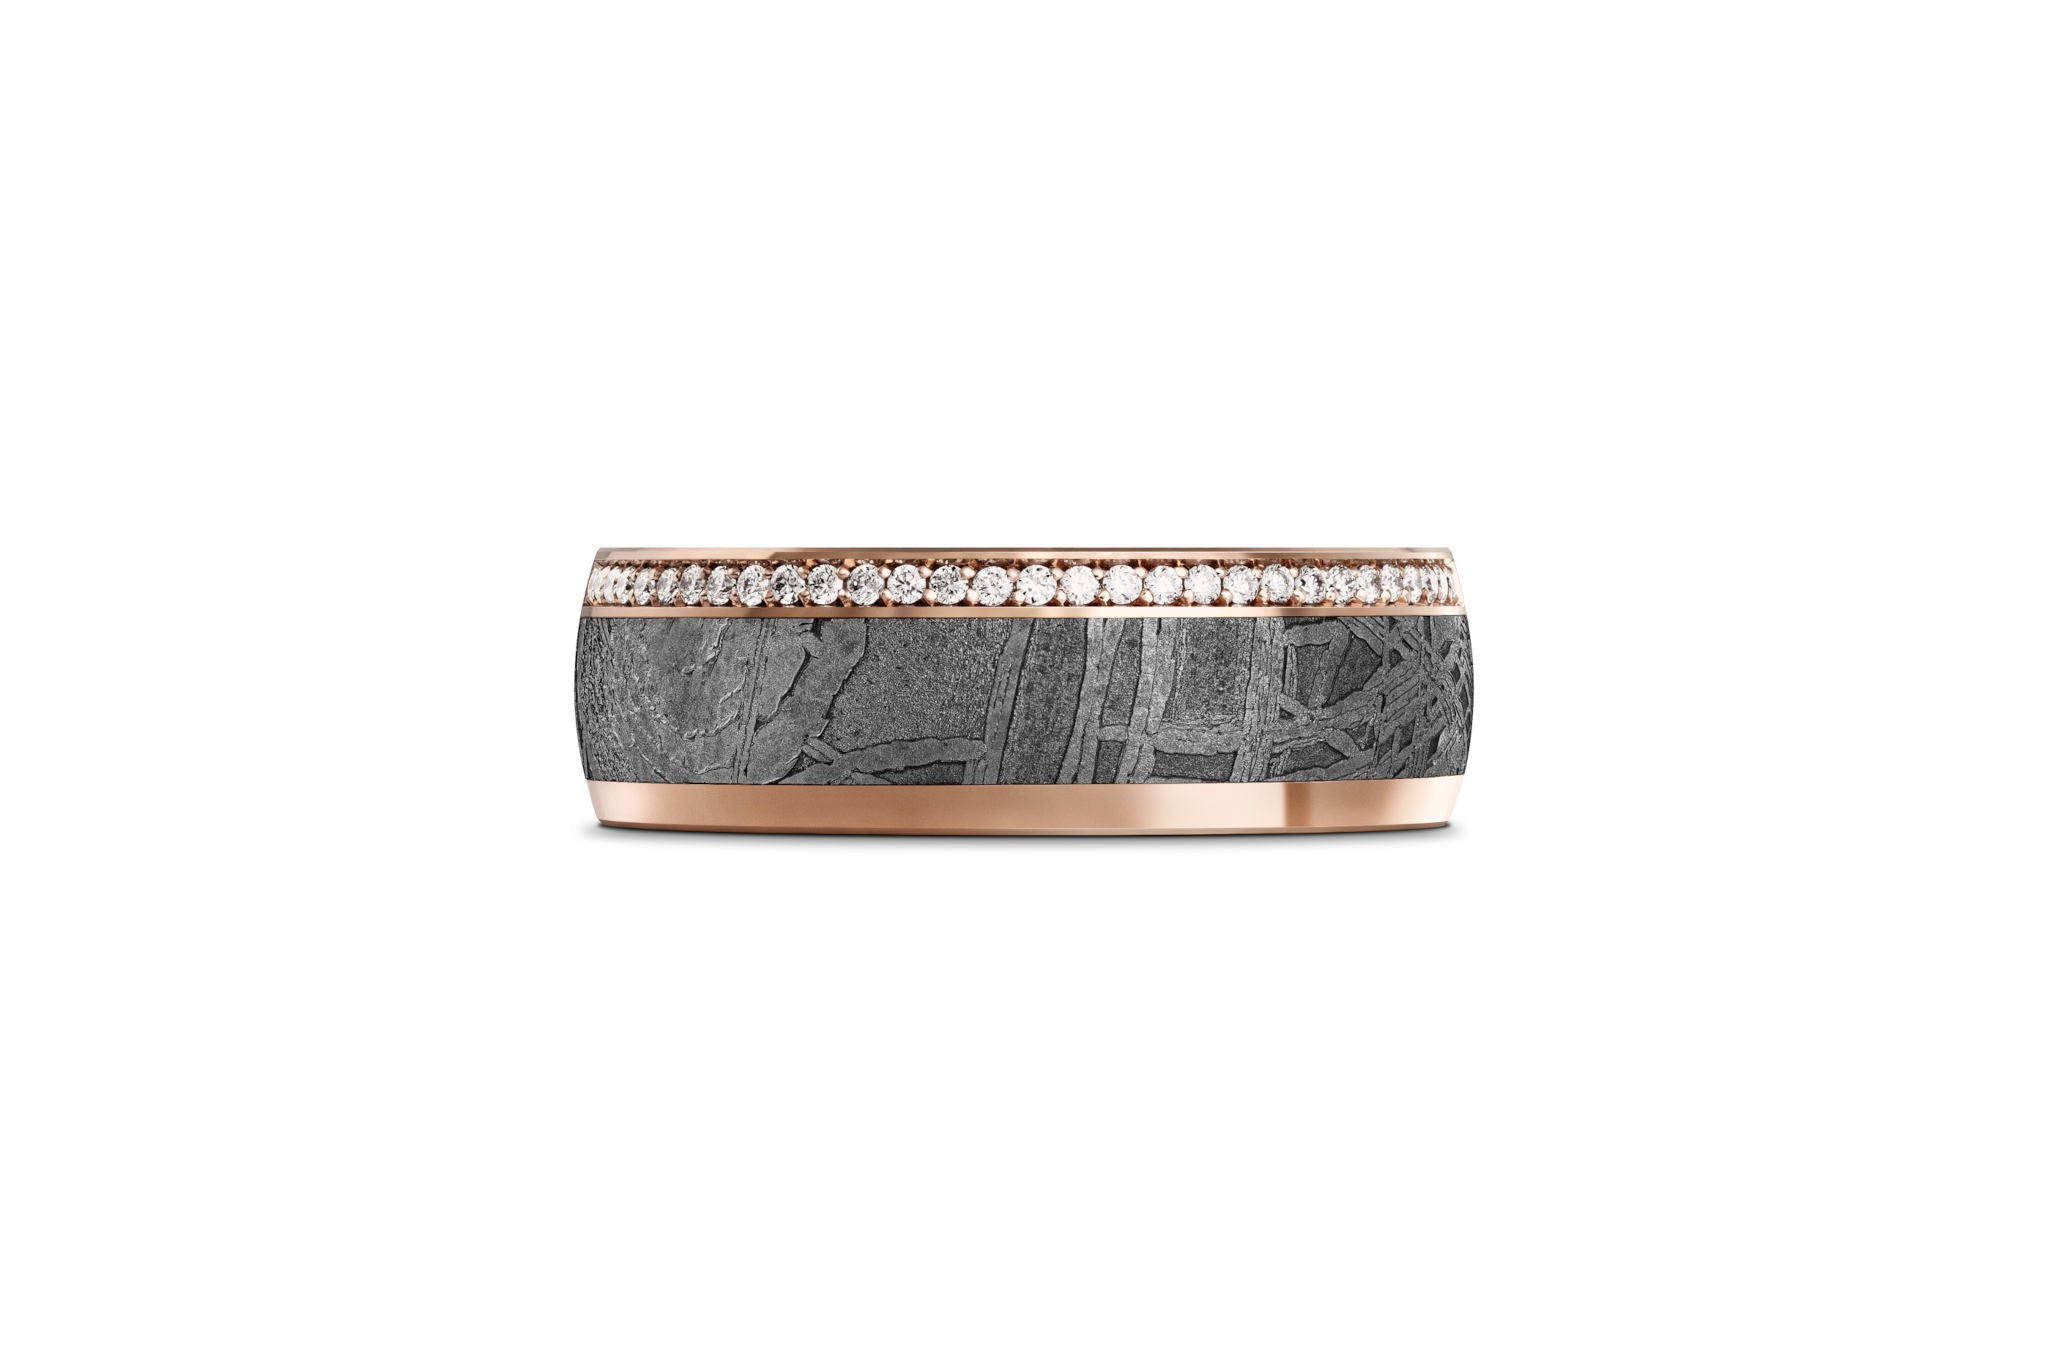   Ring aus Meteorit mit wunderschönem metallisch glänzenden Widmanstätten Muster. Innenseite aus Gold. Oben leicht abgerundet, seitlich jeweils ein Goldband, das auf der einen Seite mit zig Brillanten besetzt ist. Von oben aufgenommen